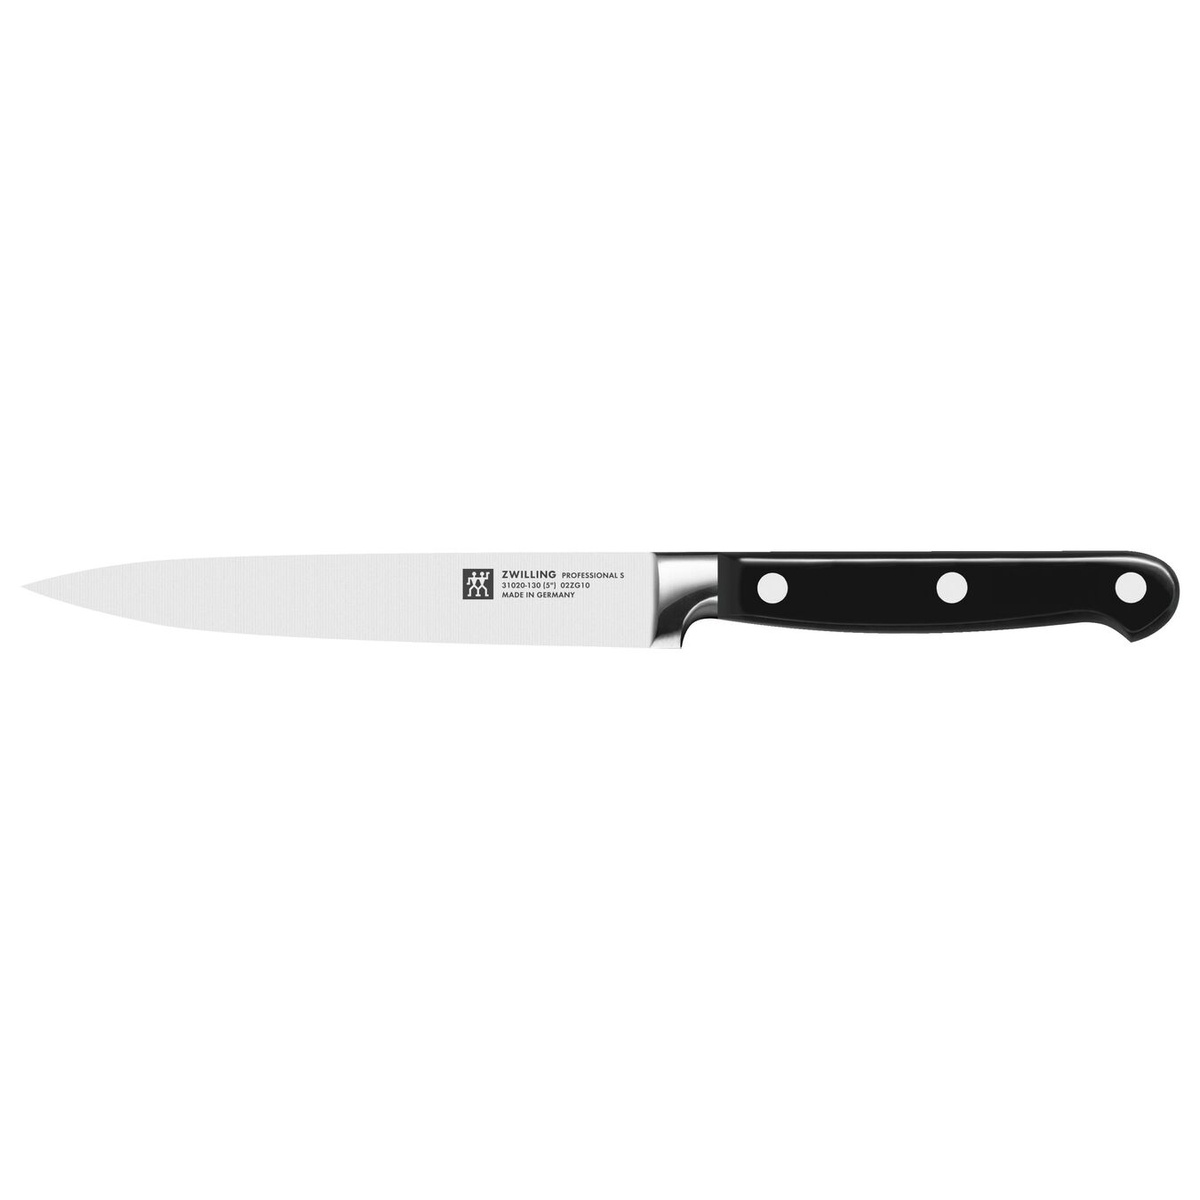 Нож универсальный 13 см Zwilling Professional S фото